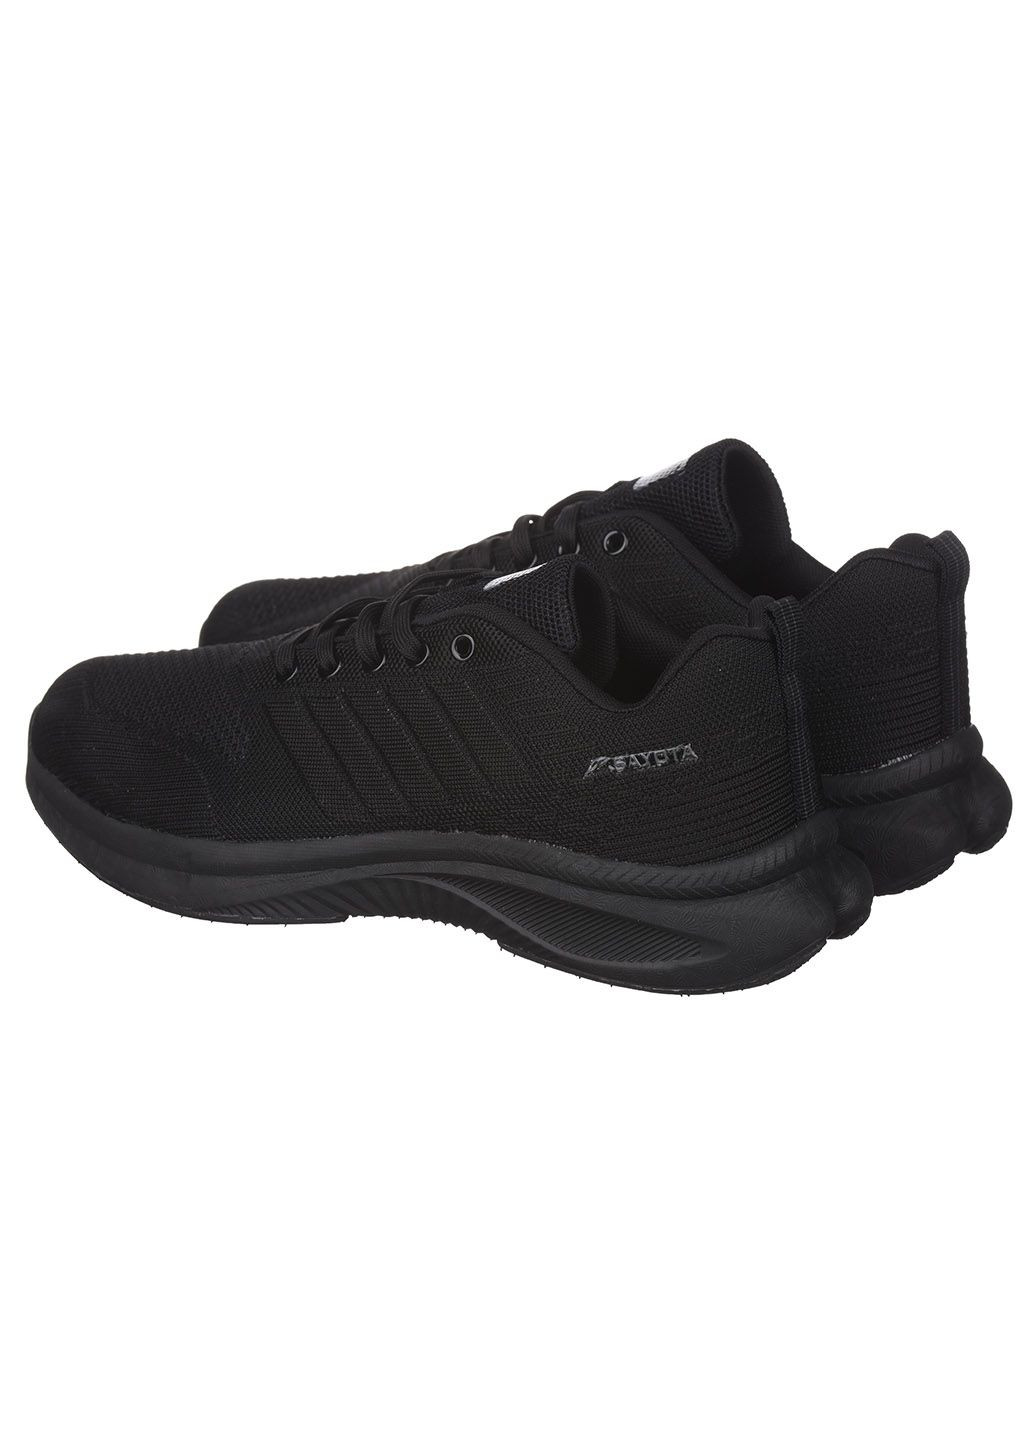 Черные демисезонные мужские кроссовки s620-1 Sayota